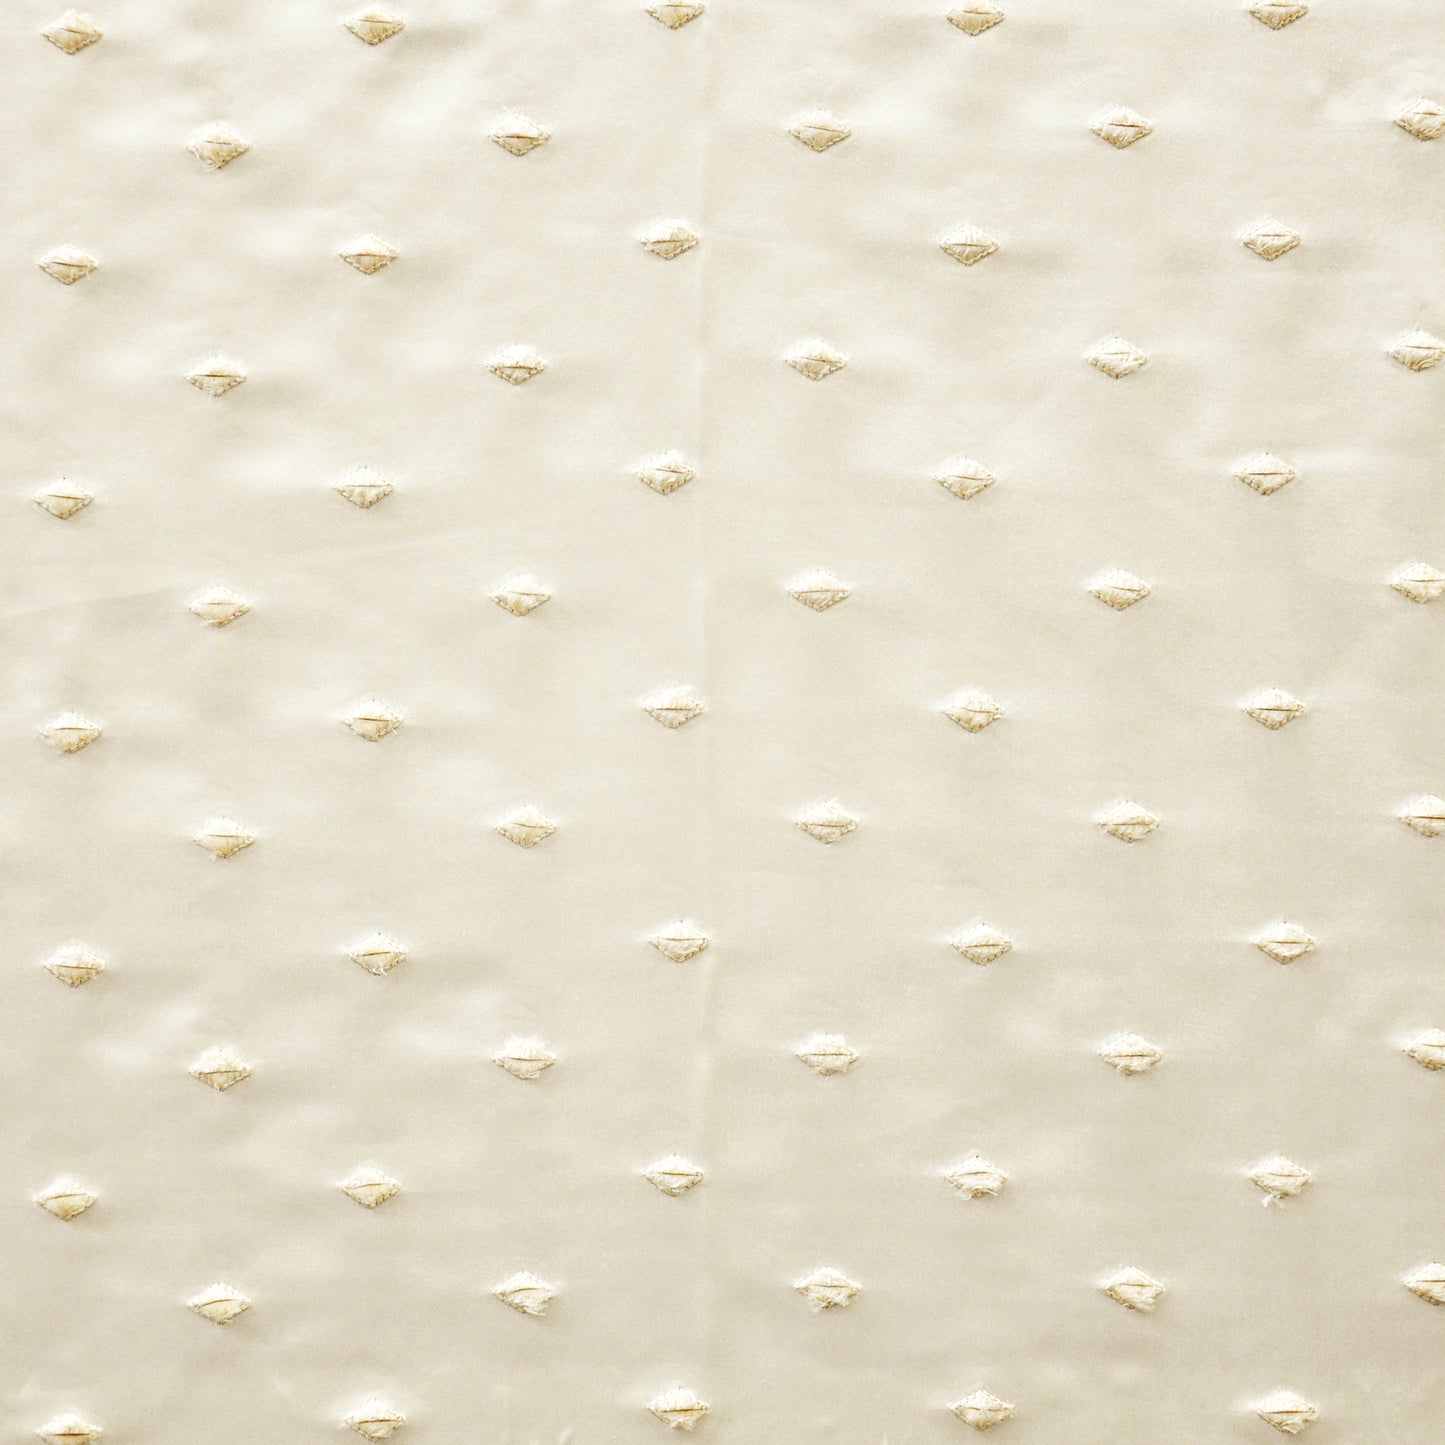 Purchase Maxwell Fabric - Amici, # 726 Vanilla